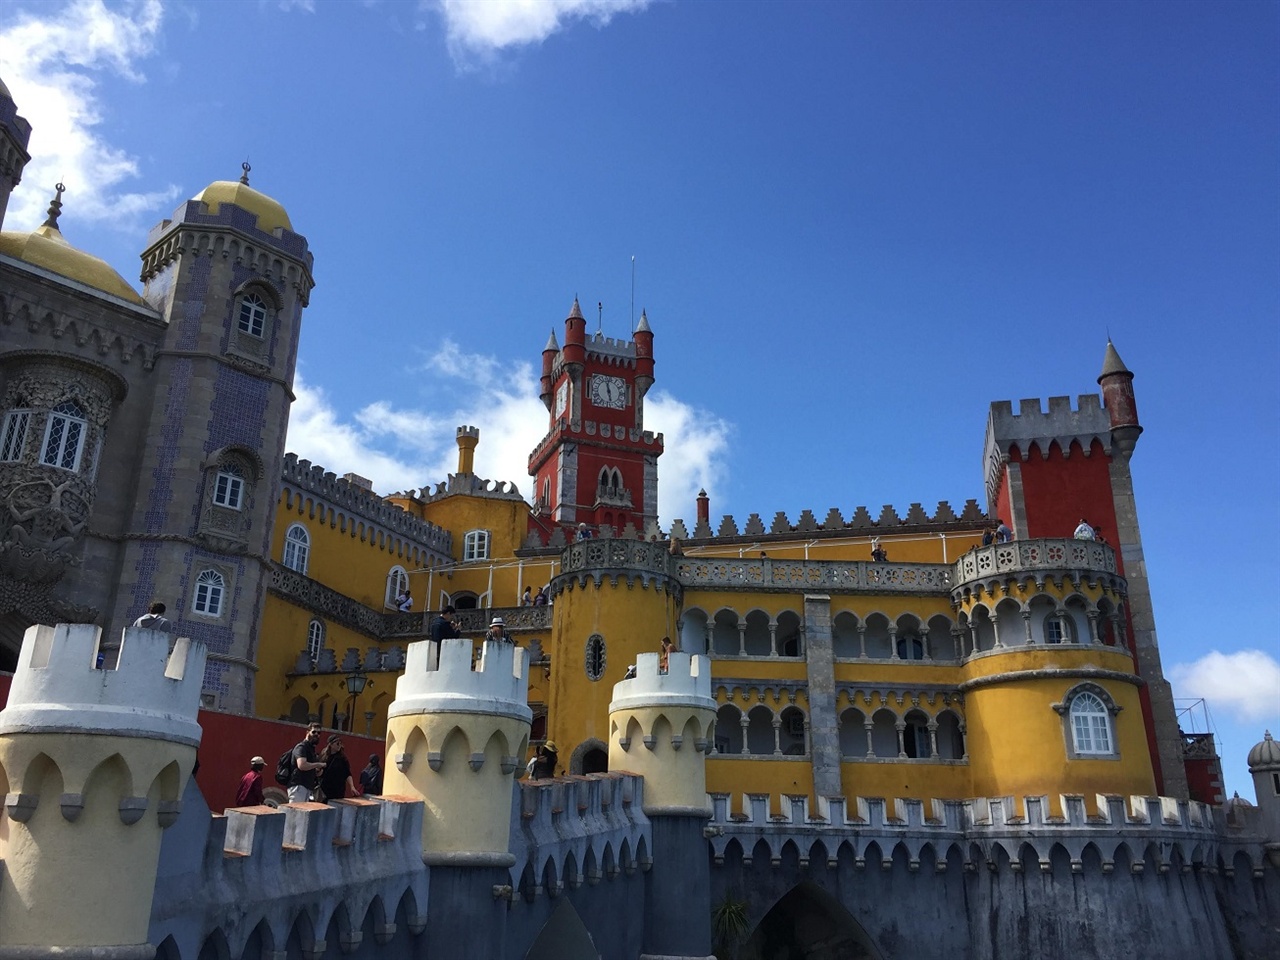 놀이공원의 성들보다 더 비현실적인 성이었어요. 어찌나 알록달록한 원색의 향연인지! 그런데, 이 곳에서 포르투갈의 마지막 왕이 실제로 집무를 봤다고 하네요. 정말 예뻤어요!